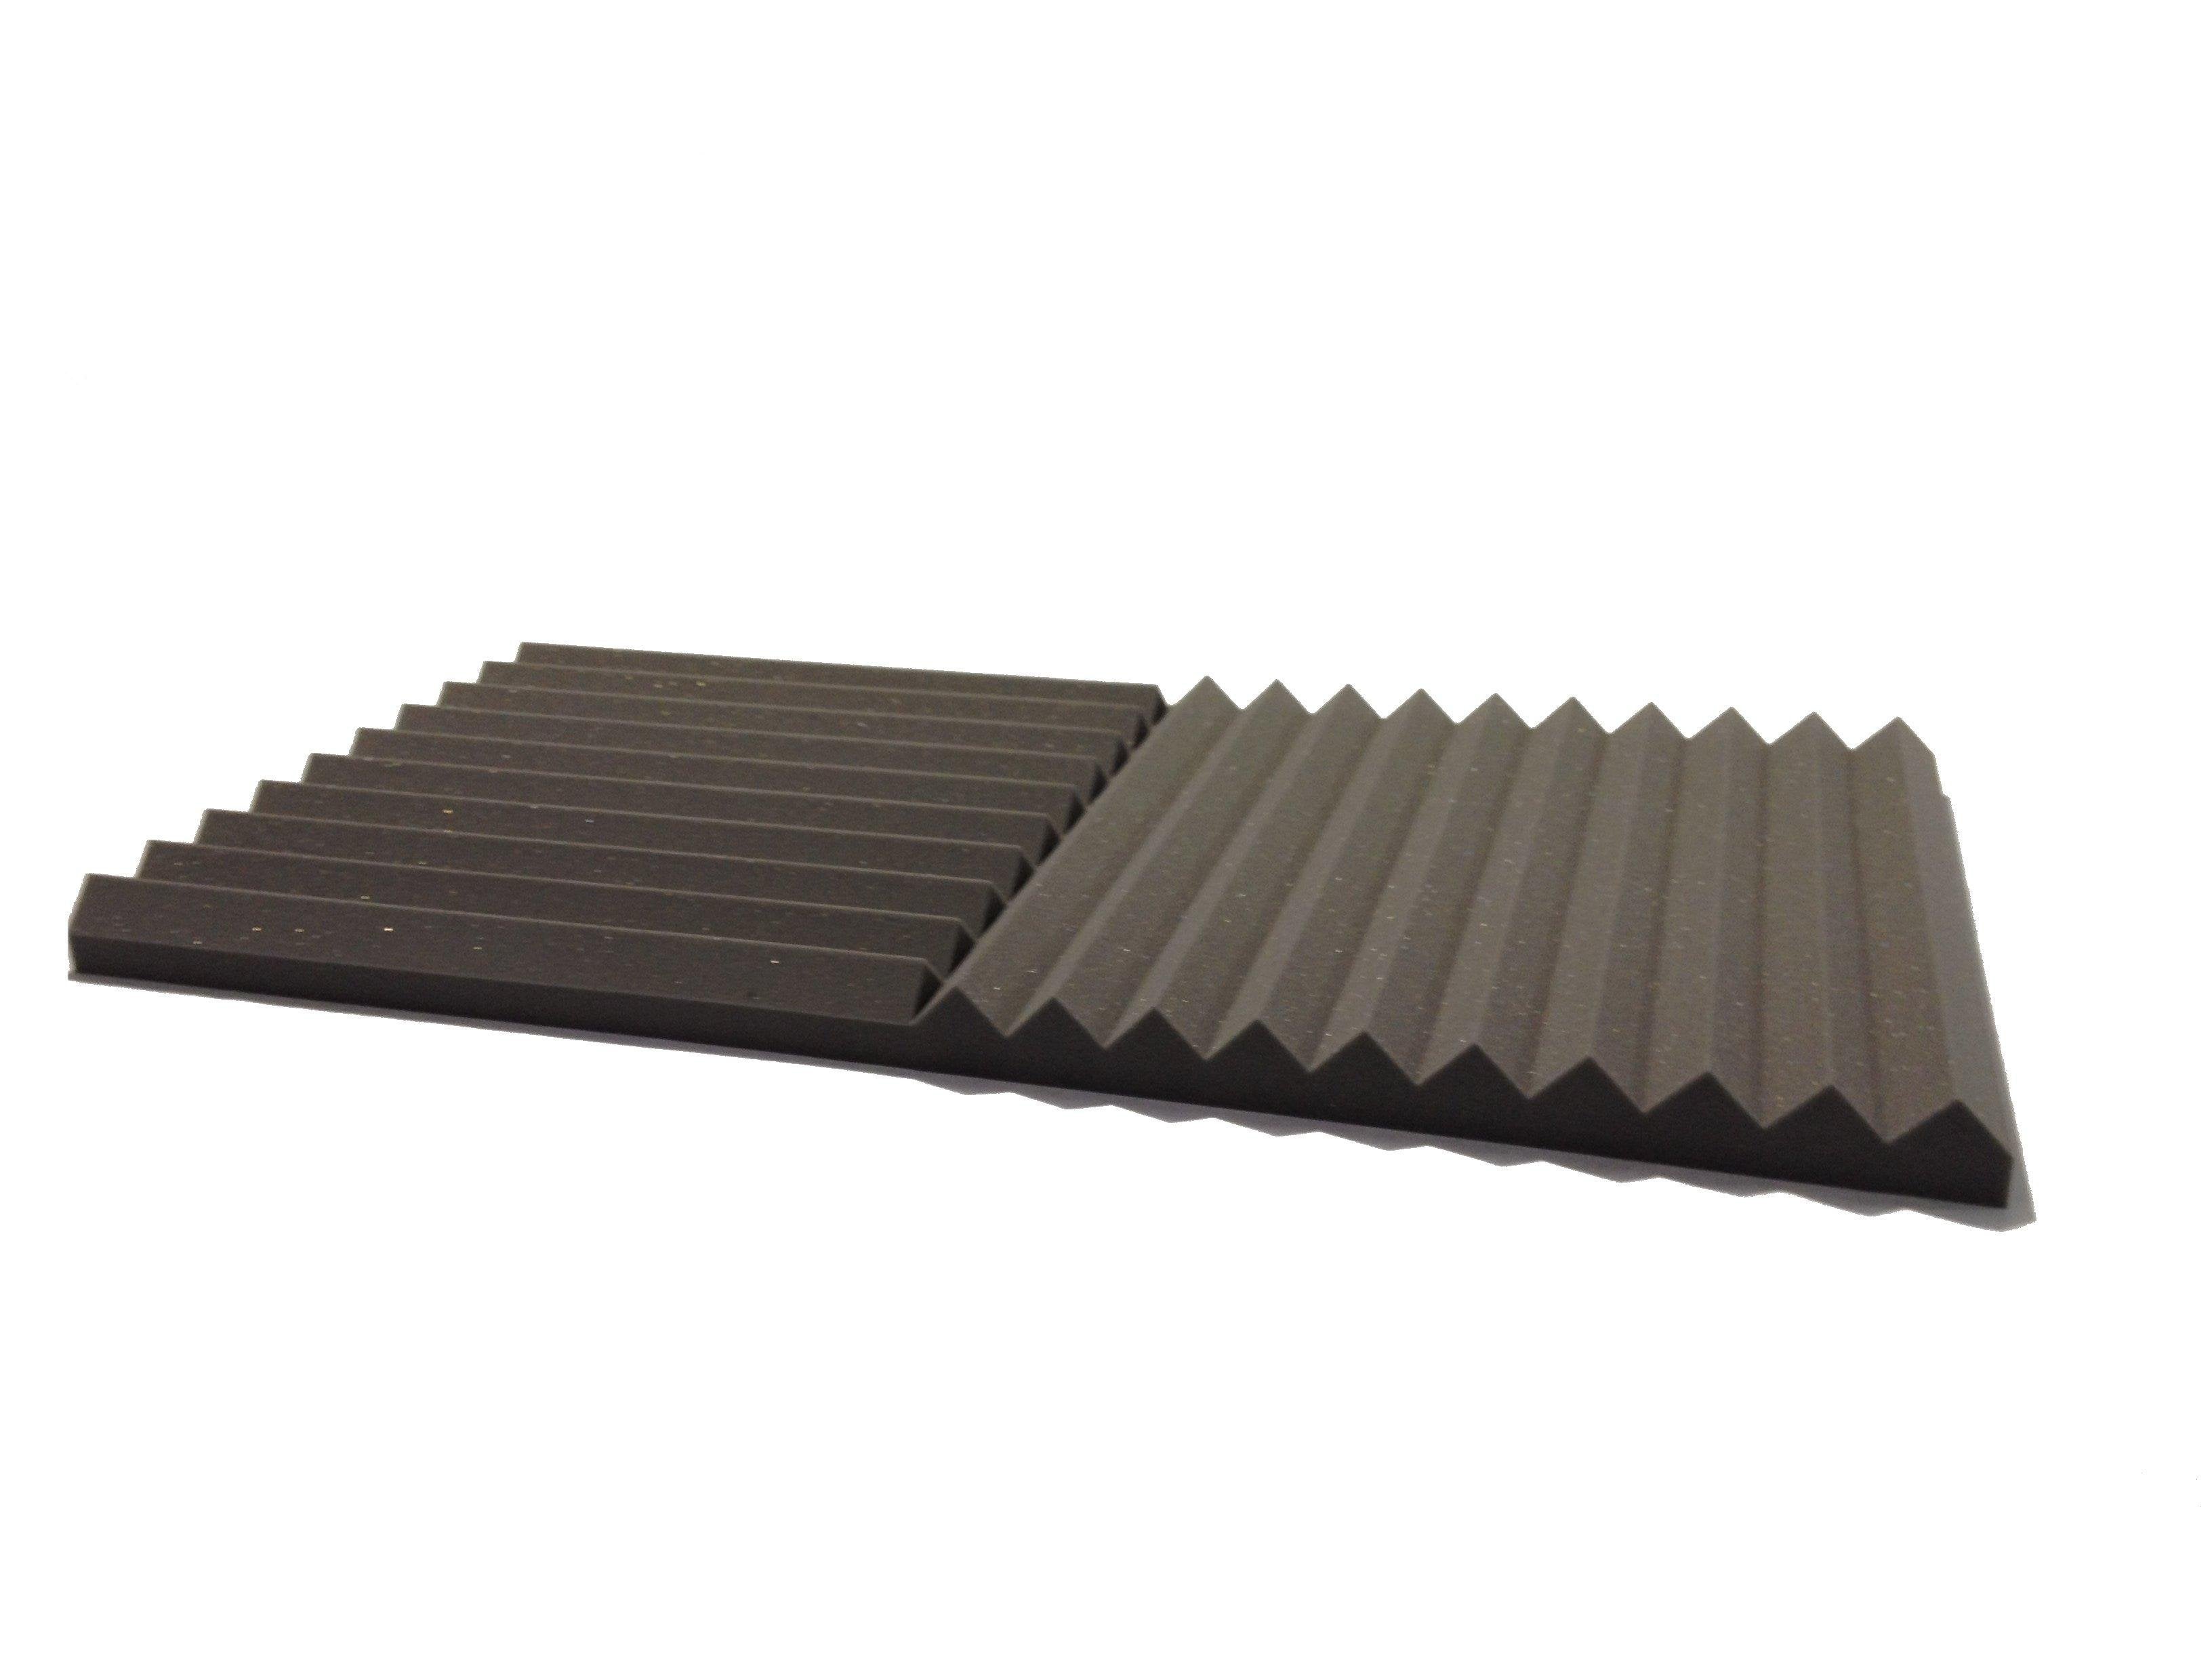 Wedge PRO 30" Acoustic Studio Foam Tile Pack - Advanced Acoustics